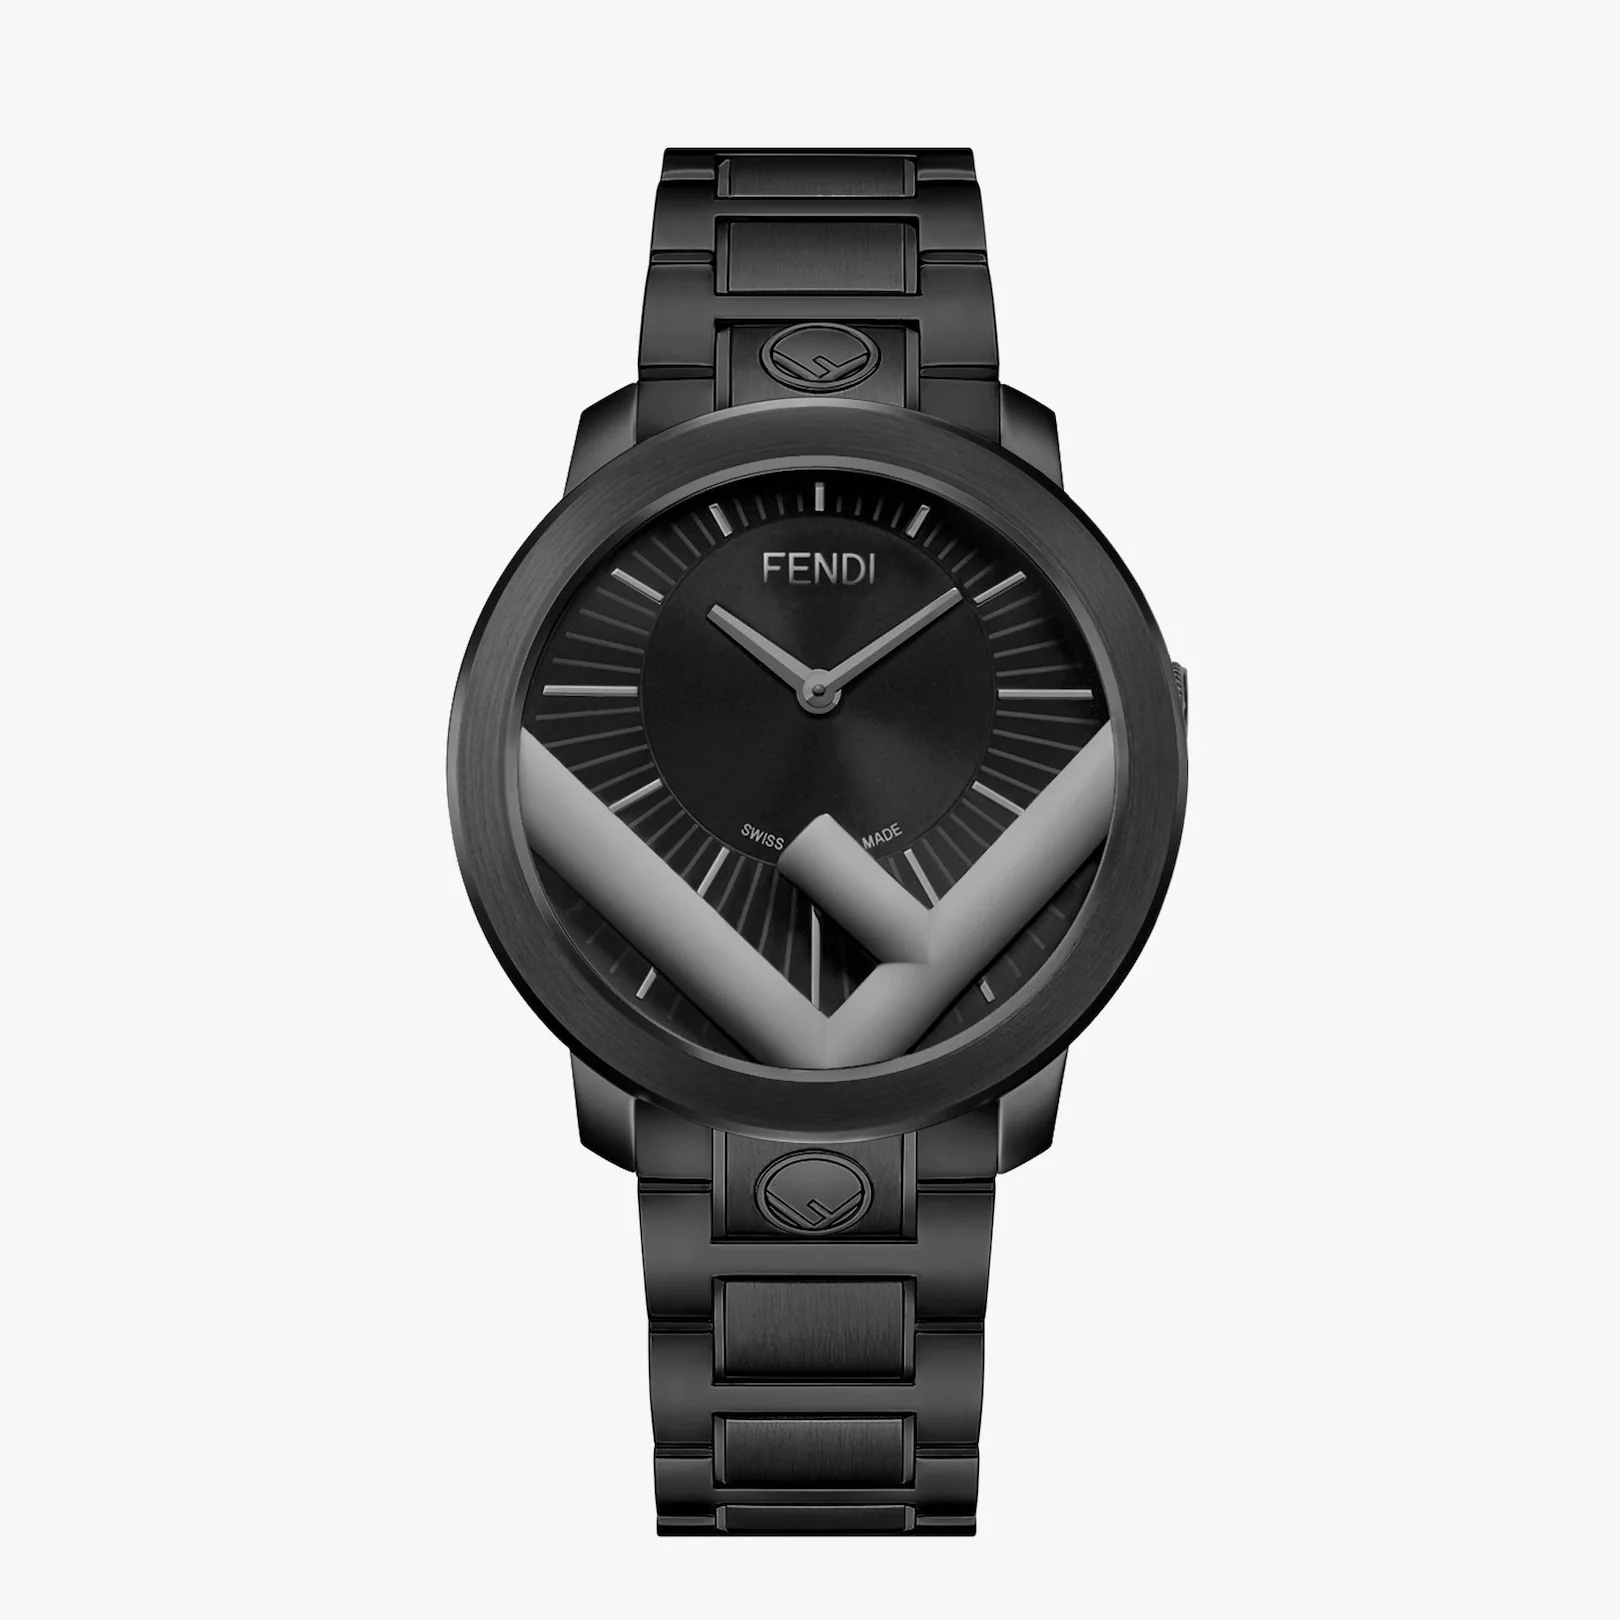 41 mm (1.6 inch) - Watch with F is Fendi logo - 1